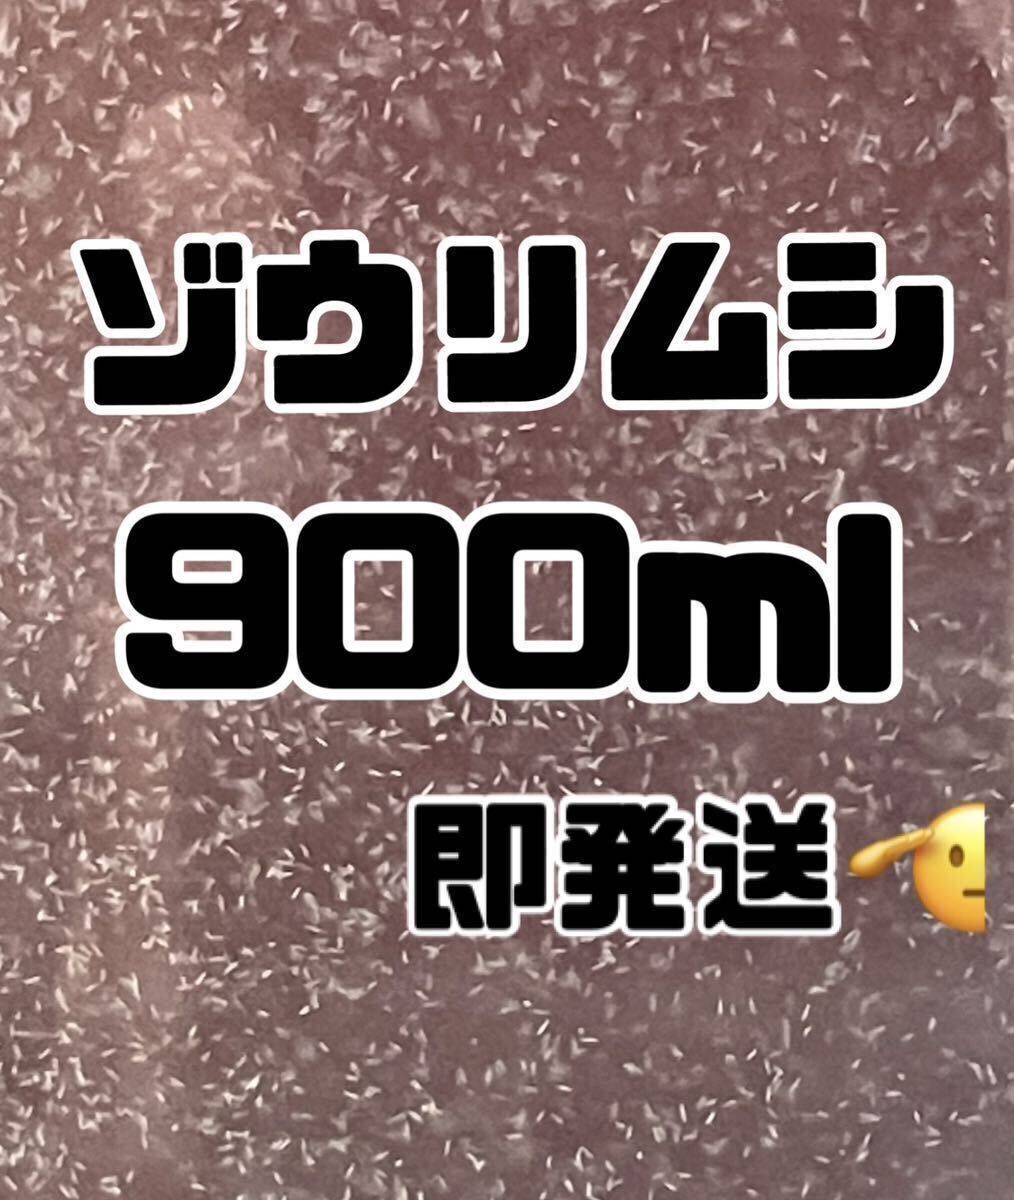 【ゾウリムシ大容量】900ml送料無料めだか金魚グッピーetc. の画像1